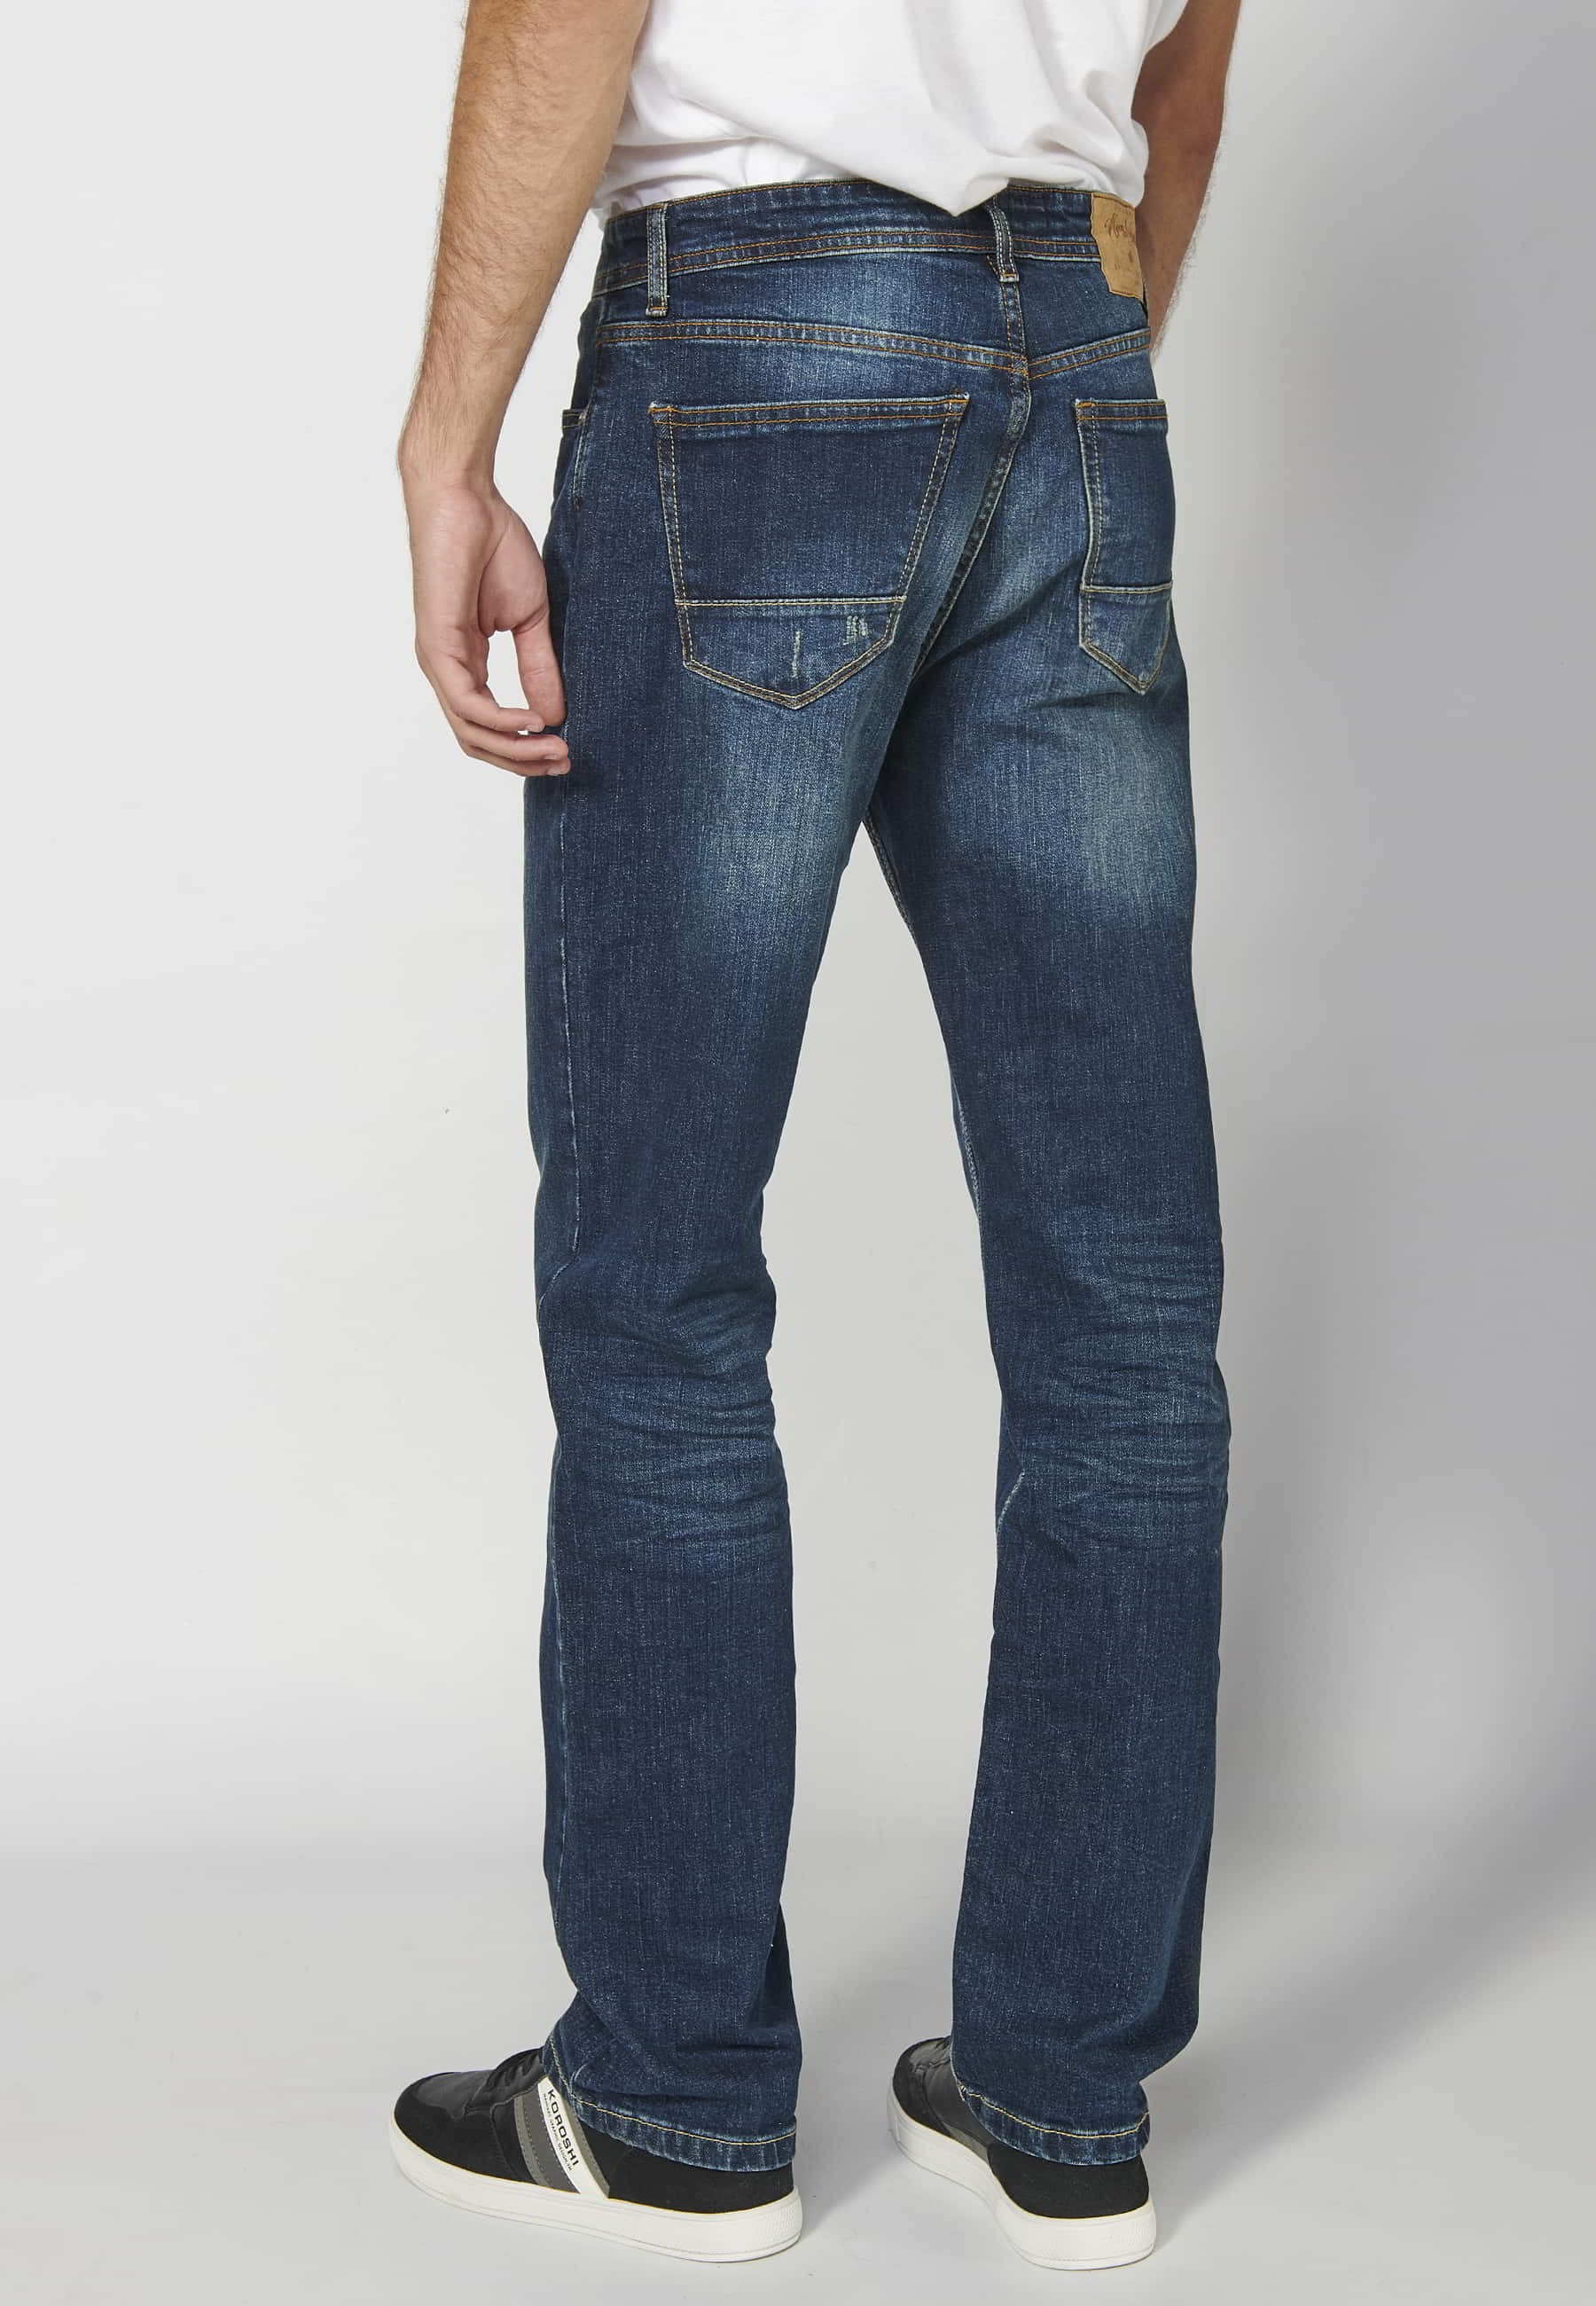 Pantalón largo jeans straigth regular fit con cinco bolsillos color Azul Oscuro para Hombre